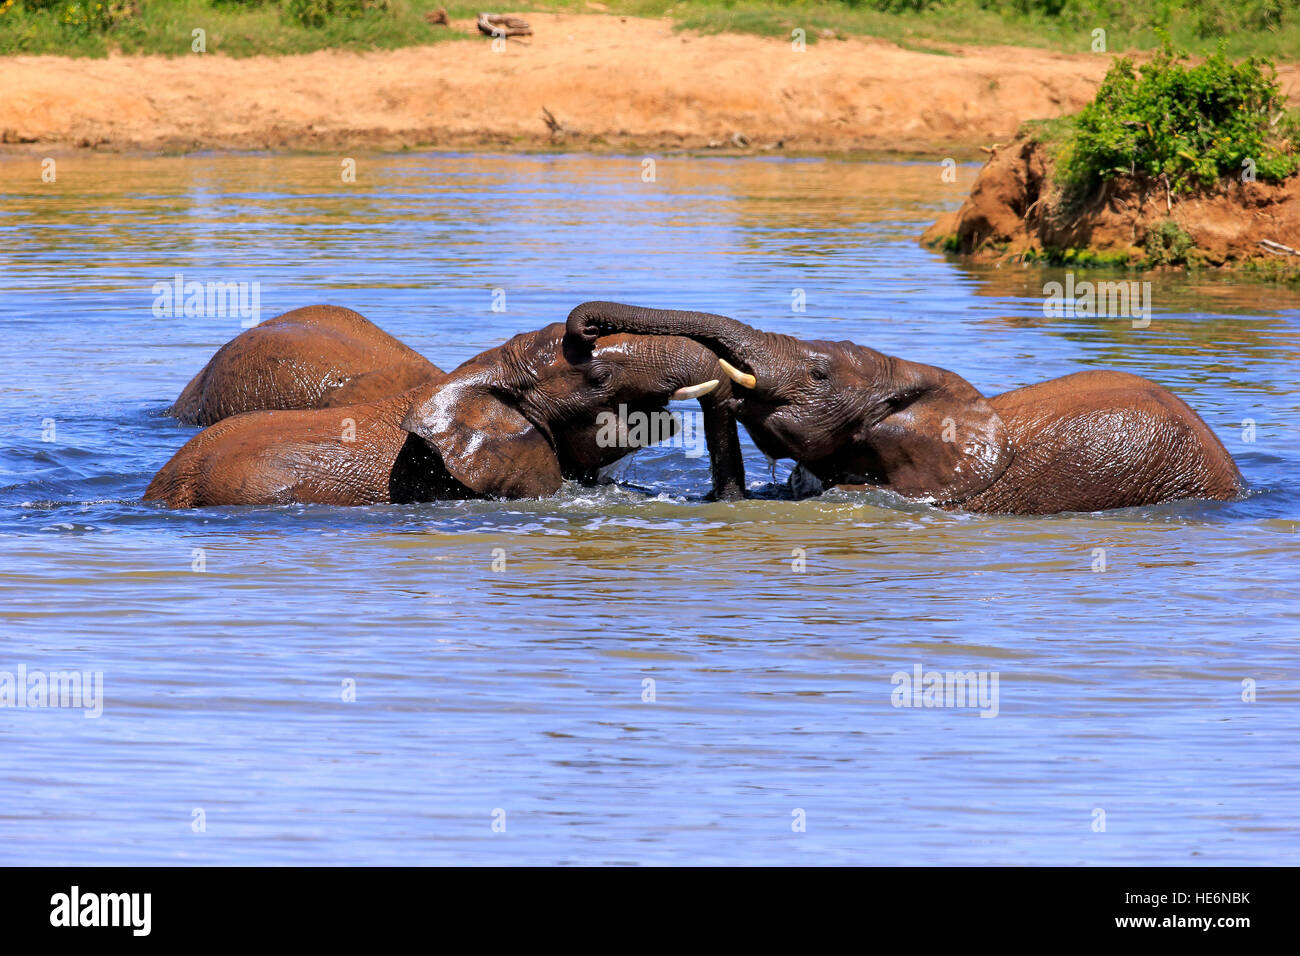 Elefante africano (Loxodonta africana), los combates en el agua, el Parque Nacional de Elefantes Addo, Eastern Cape, Sudáfrica, África Foto de stock